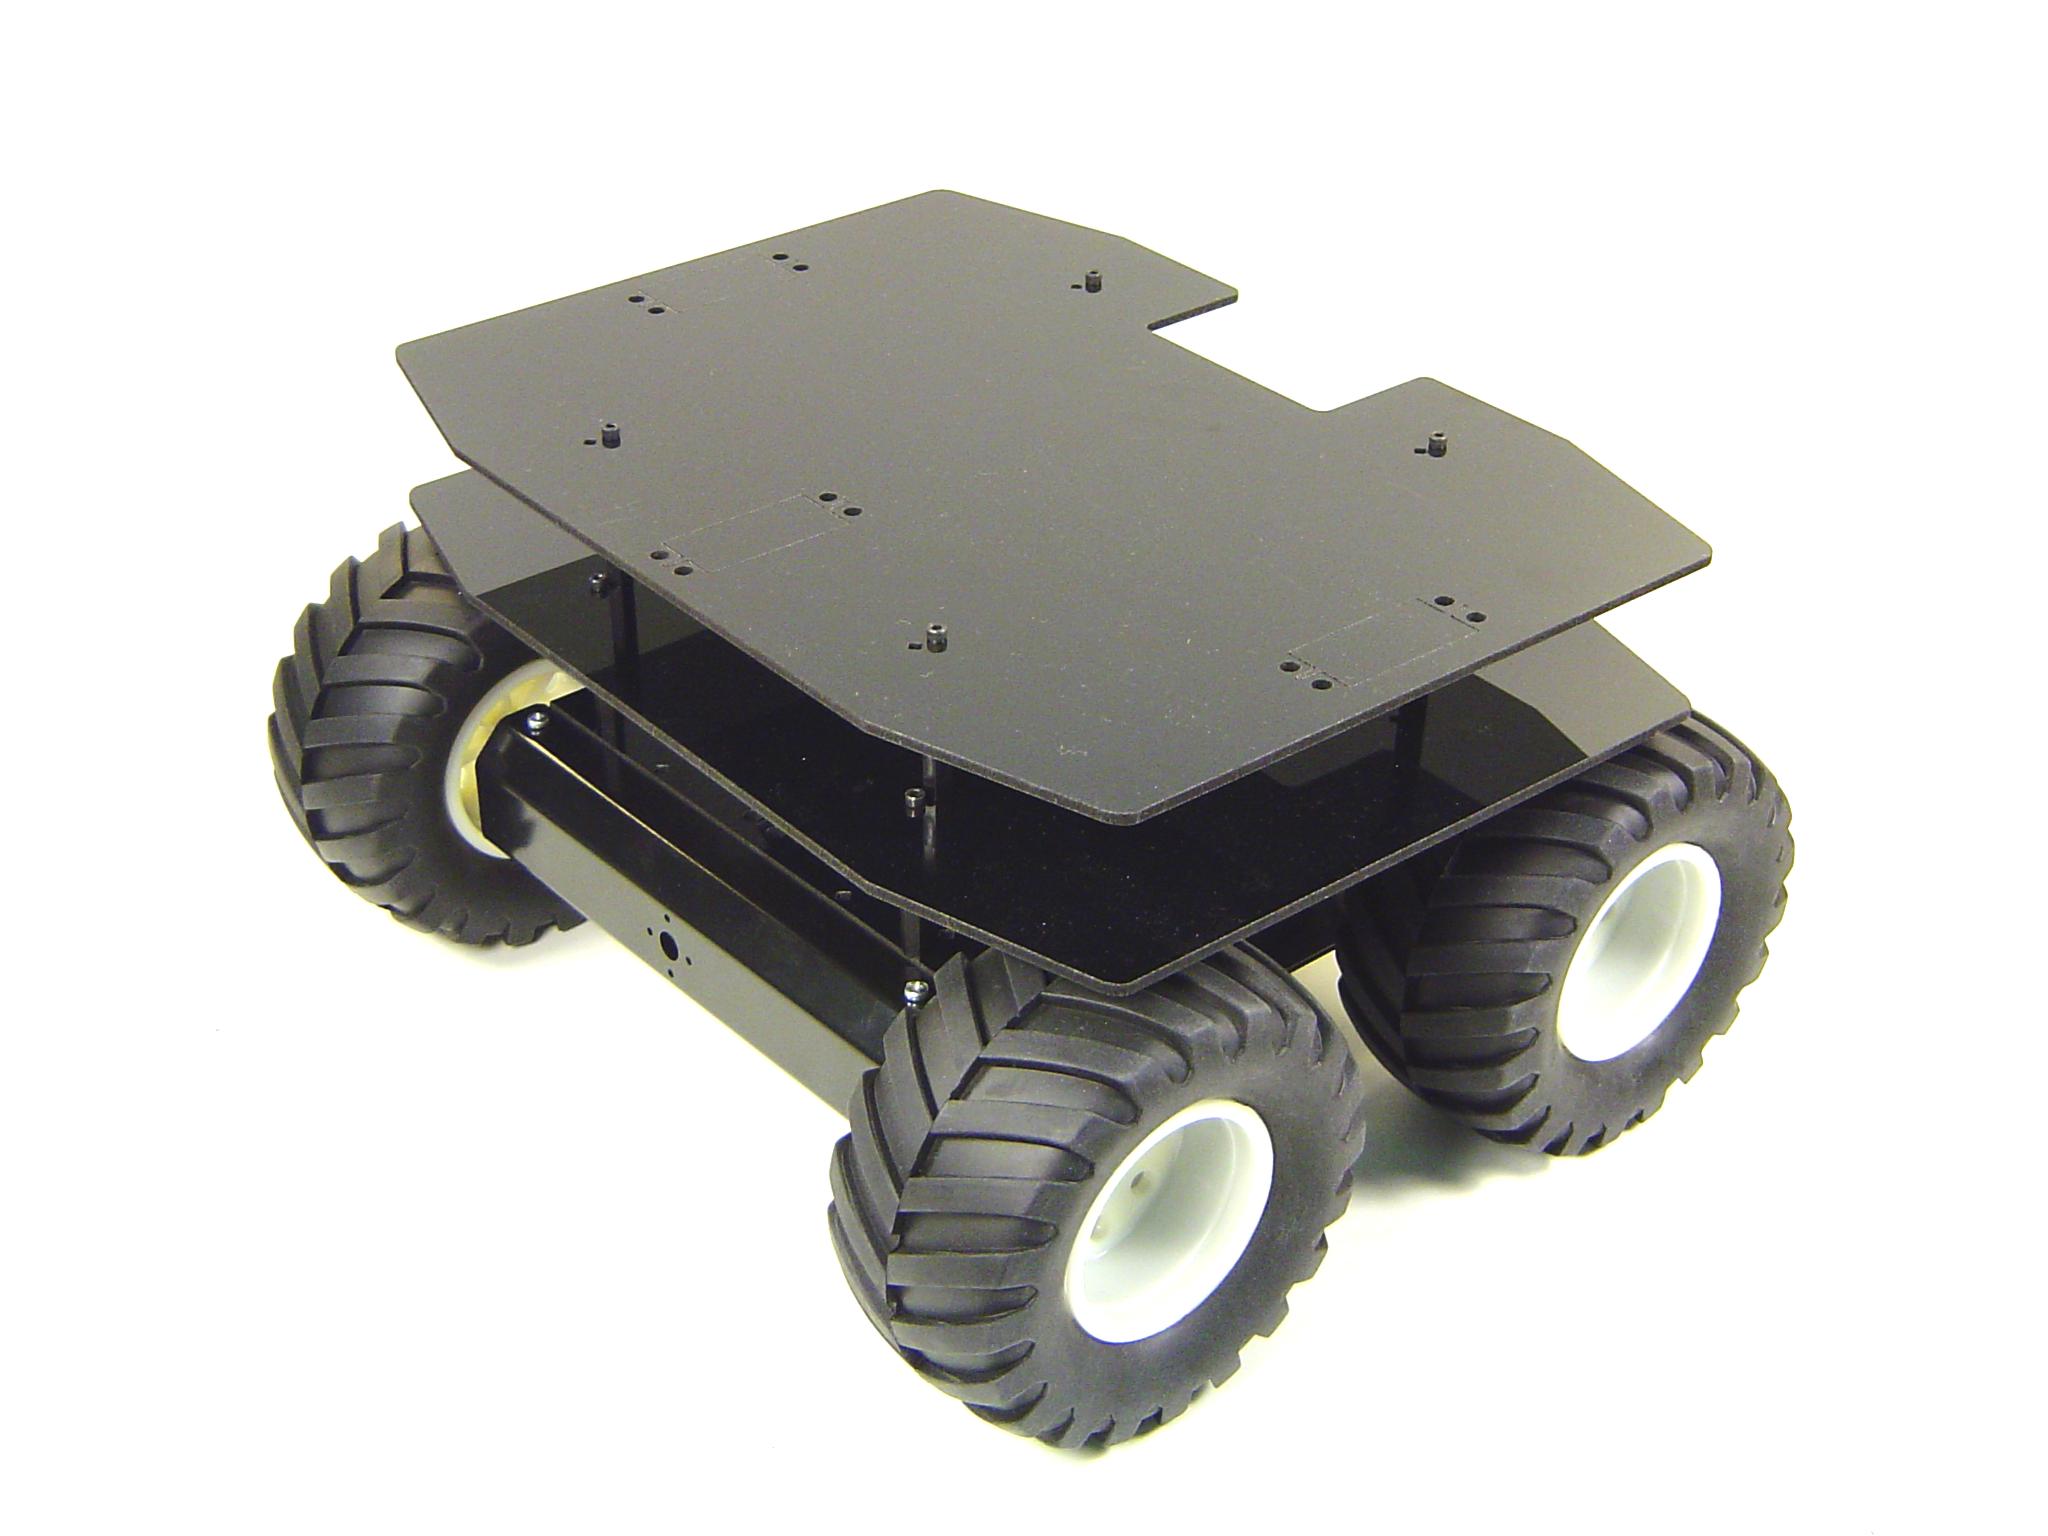 Lynxmotion A4WD1 Robot Rover Decks